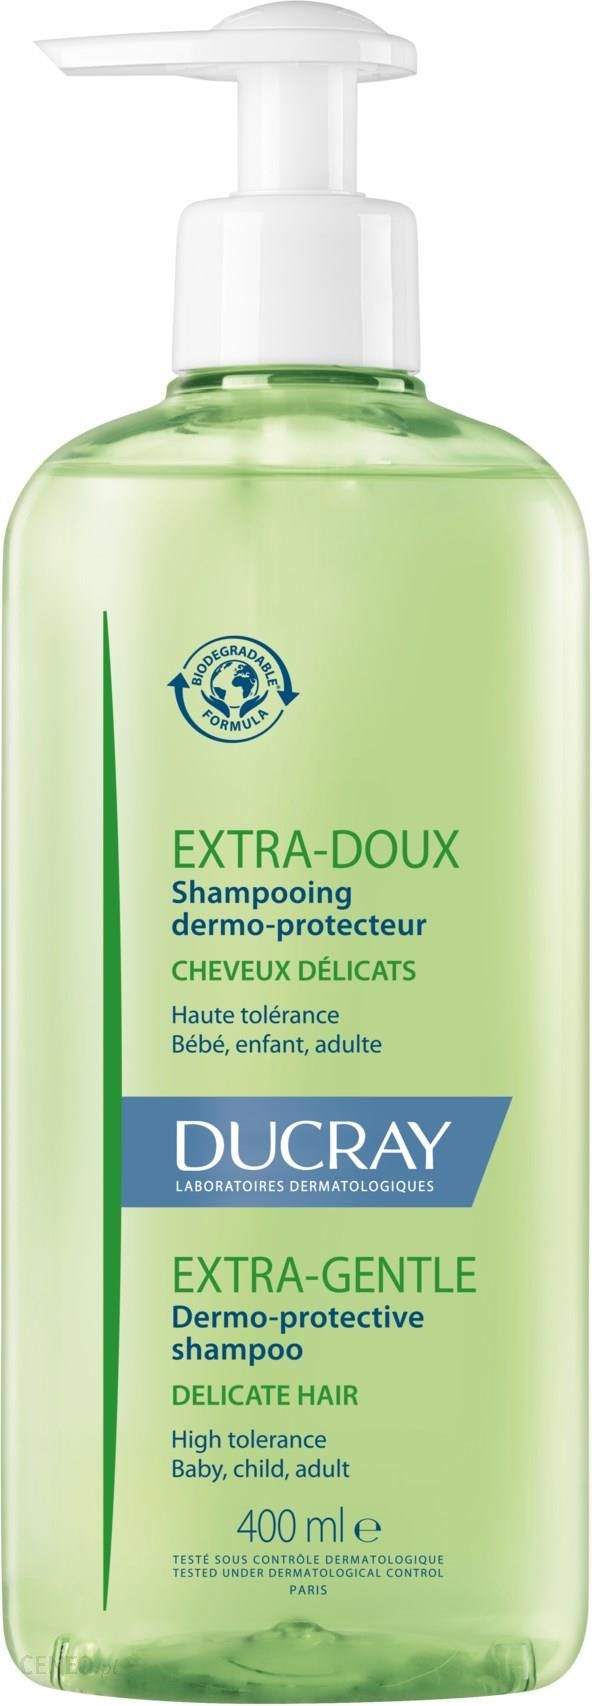 ducray extra-doux szampon nawilżający do częstego stosowania 400ml ceneo